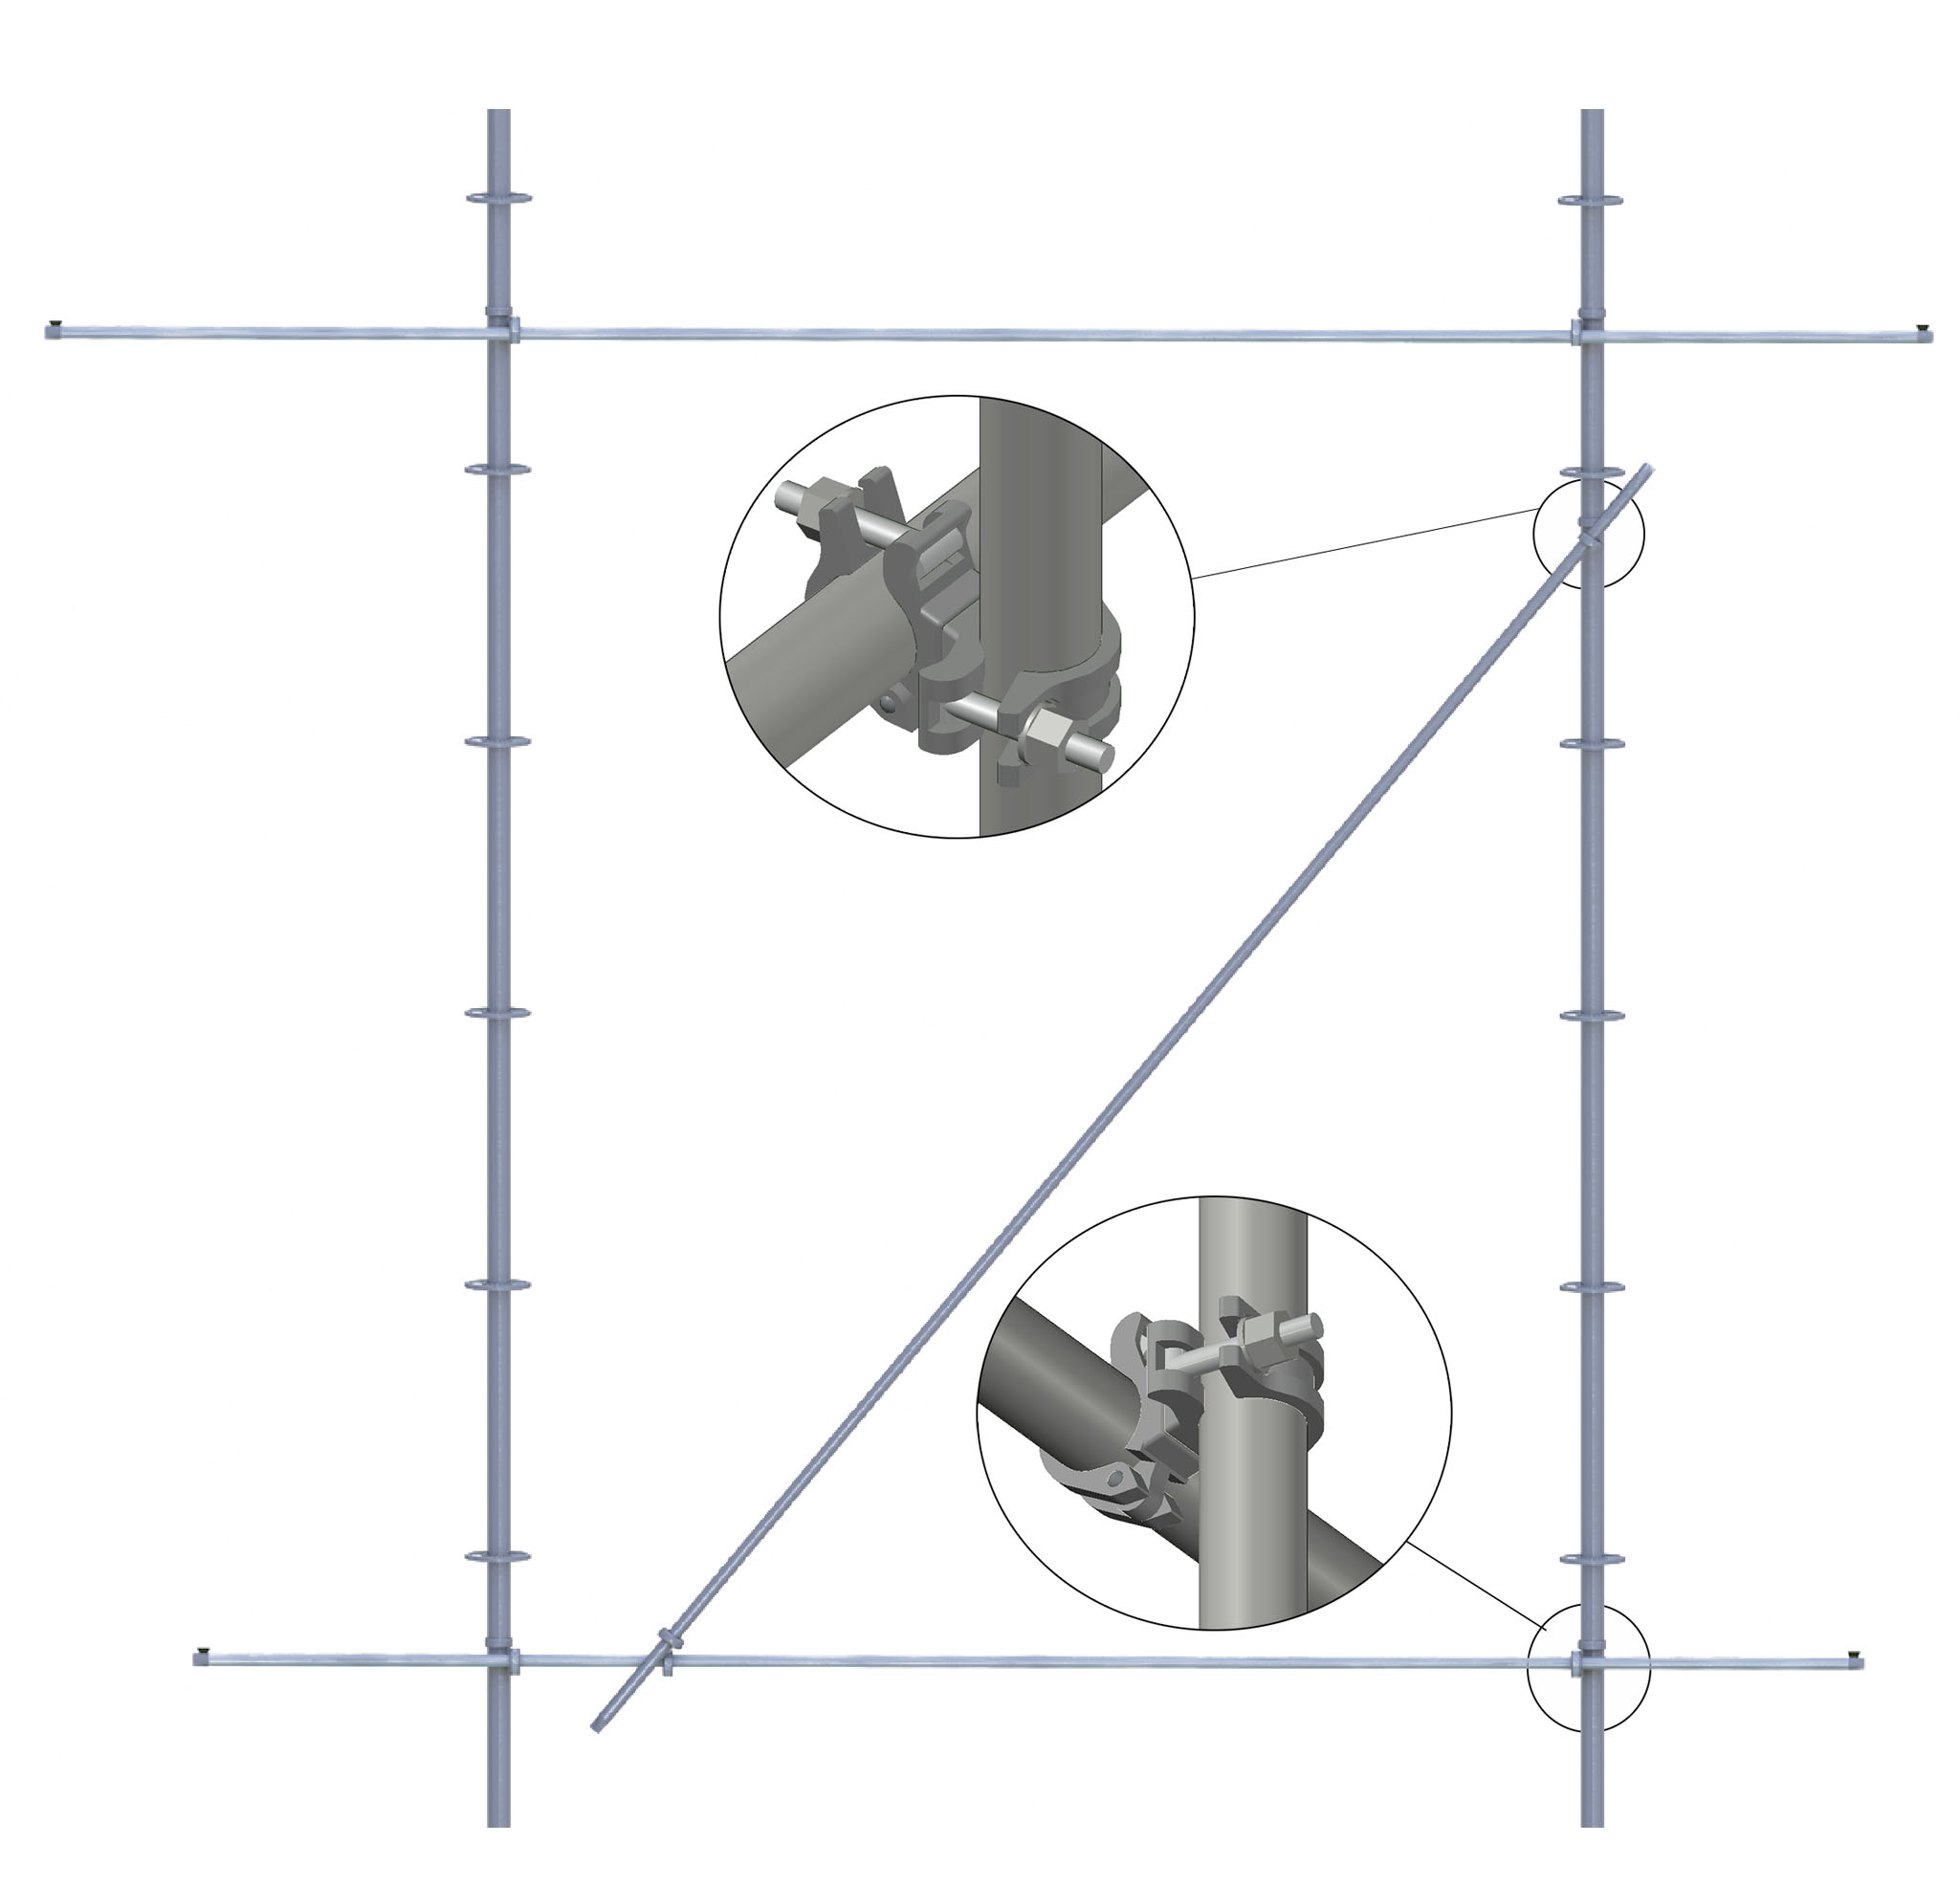 Универсальный размер трубы в ø48мм, позволяет в любых точках соединять элементы между собой одним видом хомутов